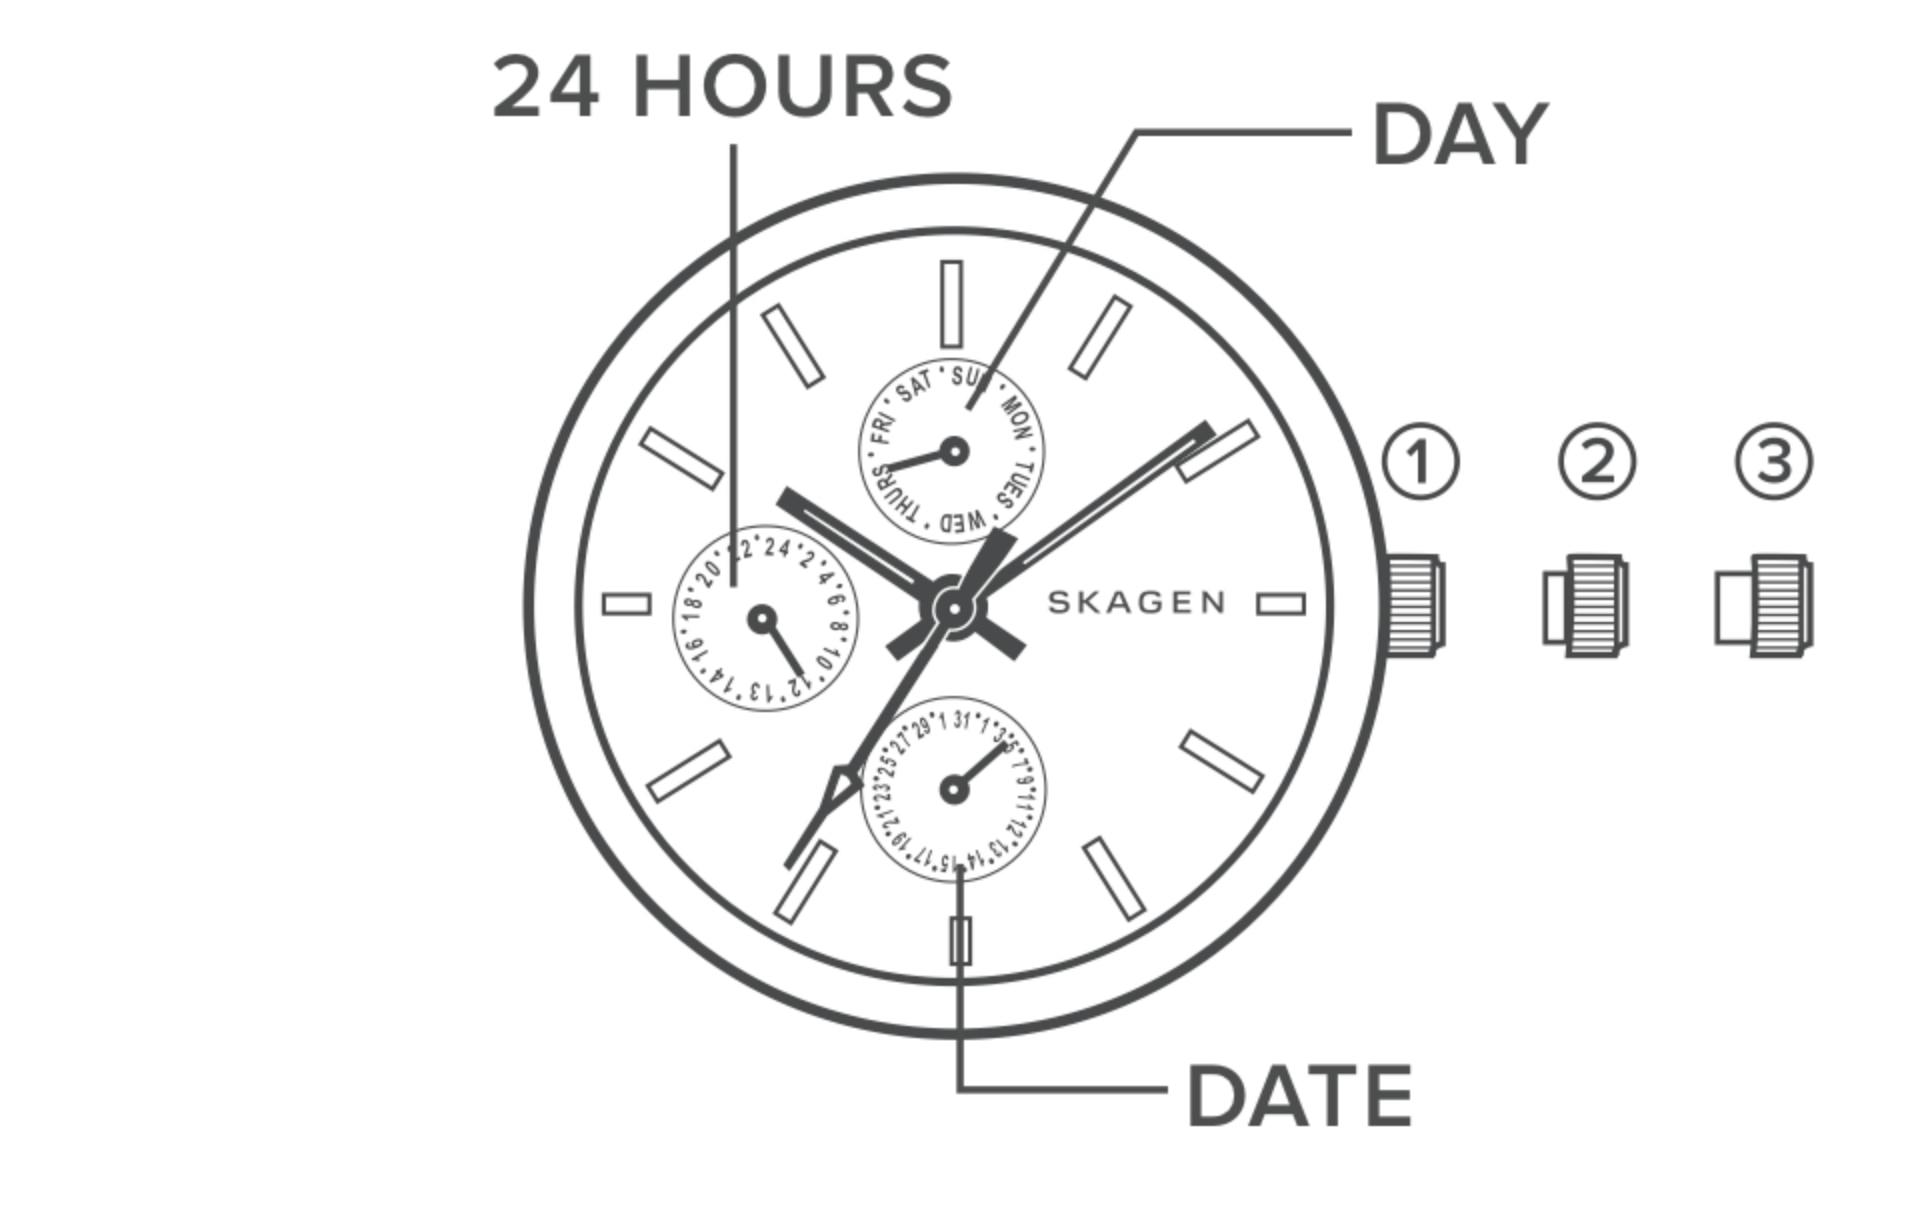 Illustration einer Multifunktionsuhr mit Beschriftung von Krone und Tages-, Datums- und 24-Stunden-Zeigern.